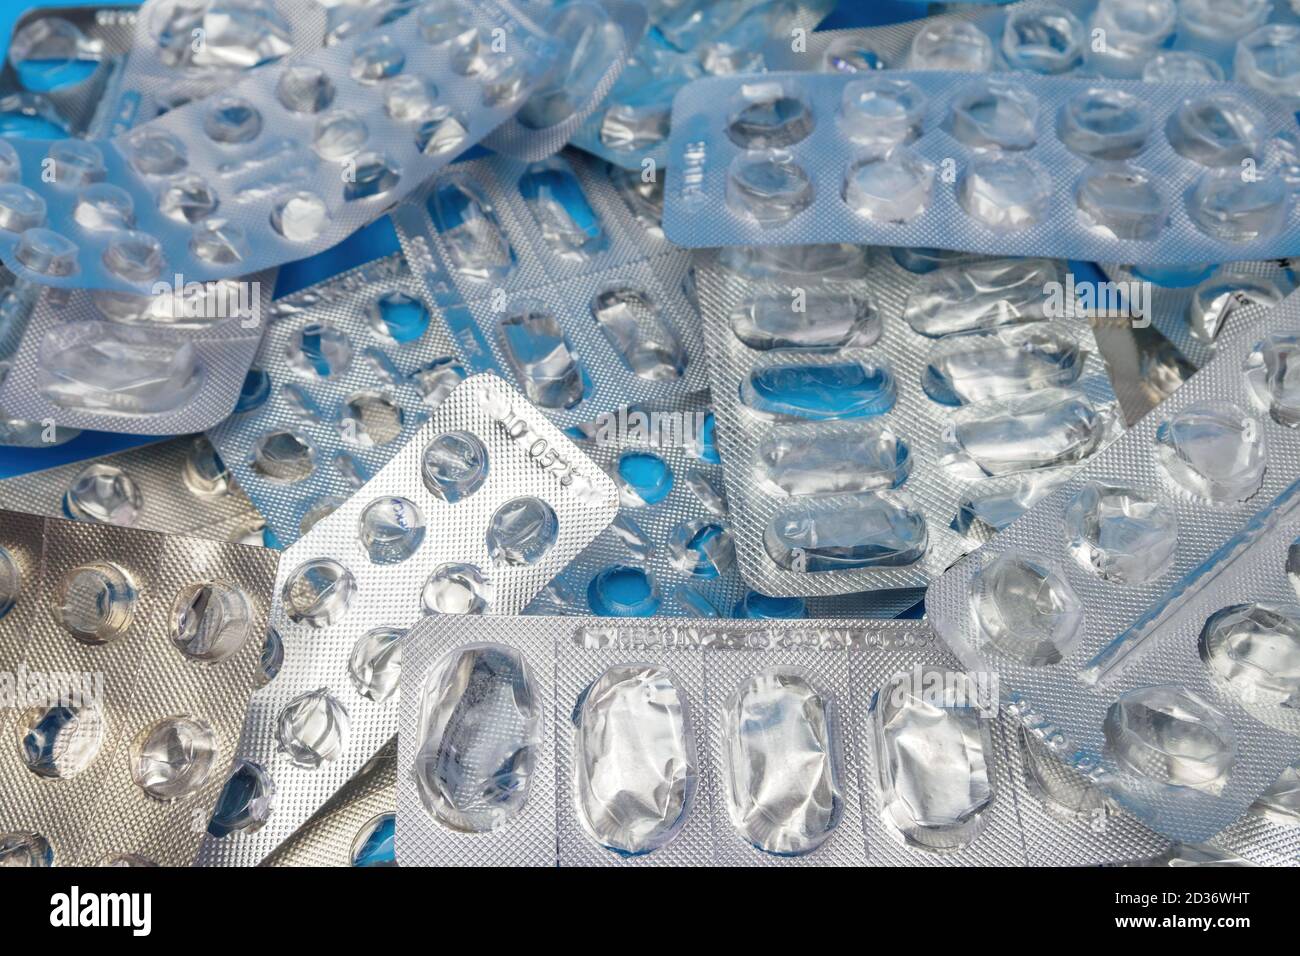 Beaucoup utilisé plaquettes thermoformées sans pilules sur fond bleu. Concept médical et de soins de santé Banque D'Images